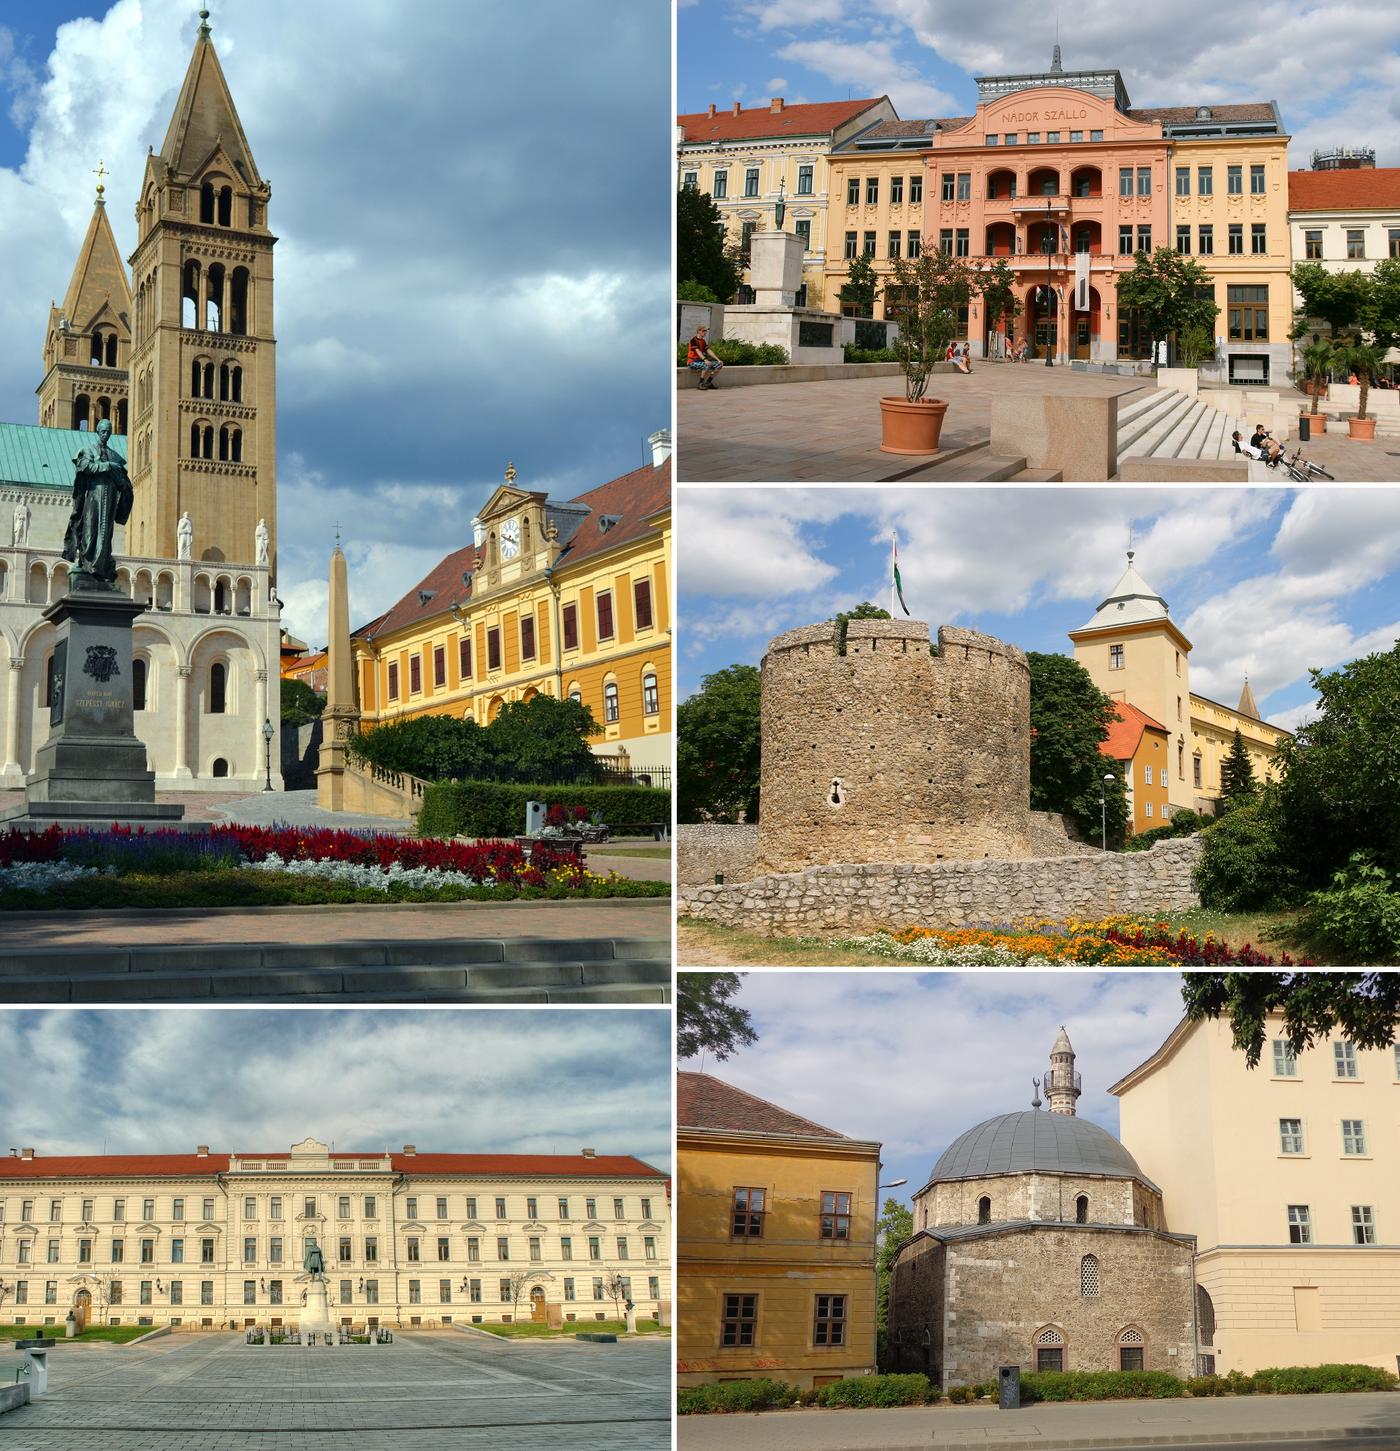 Pécs: Where history meets culture